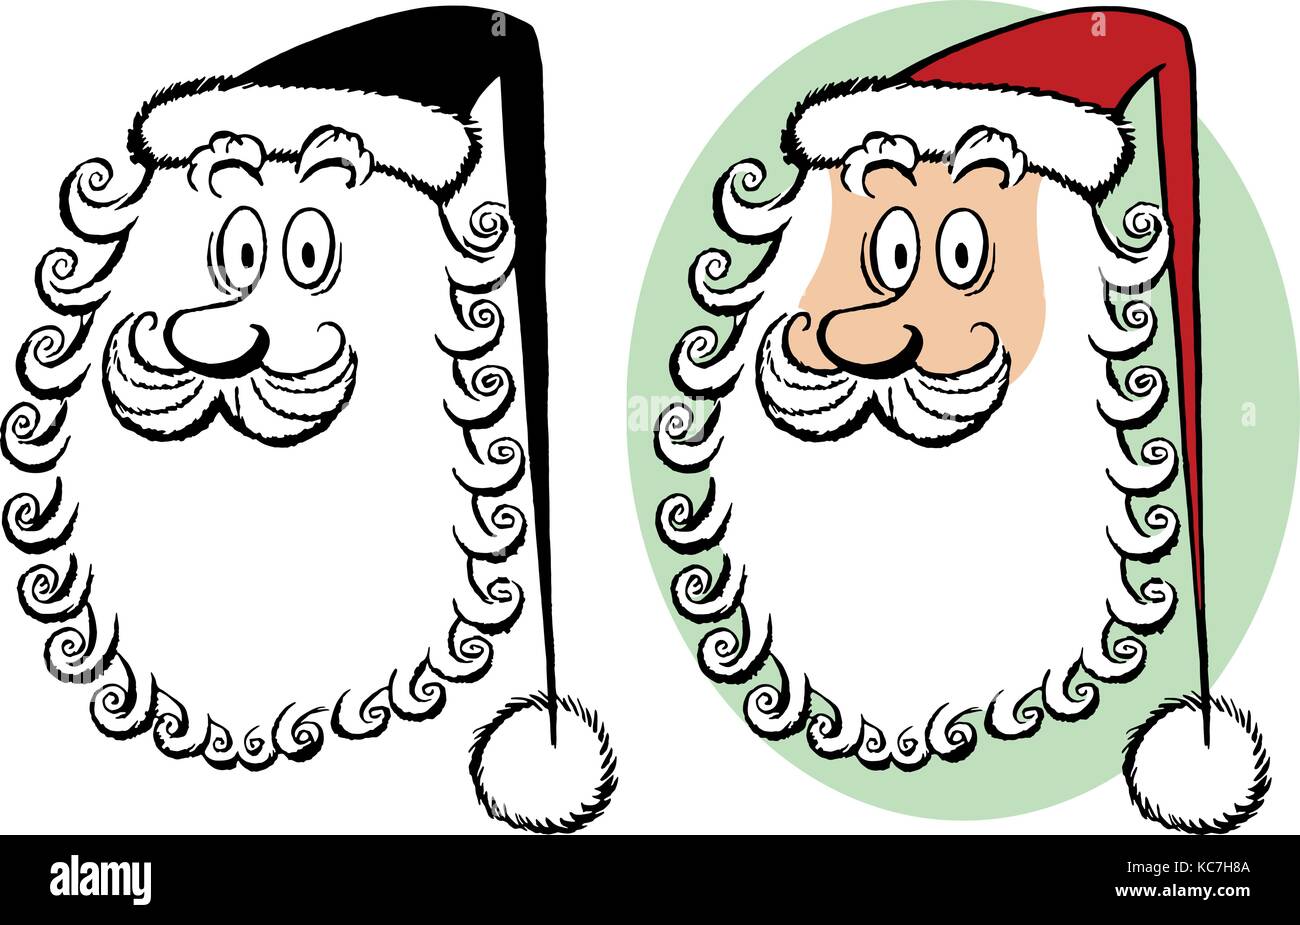 Eine Karikatur Portrait von Santa Claus mit einem sehr lockigem Bart. Stock Vektor